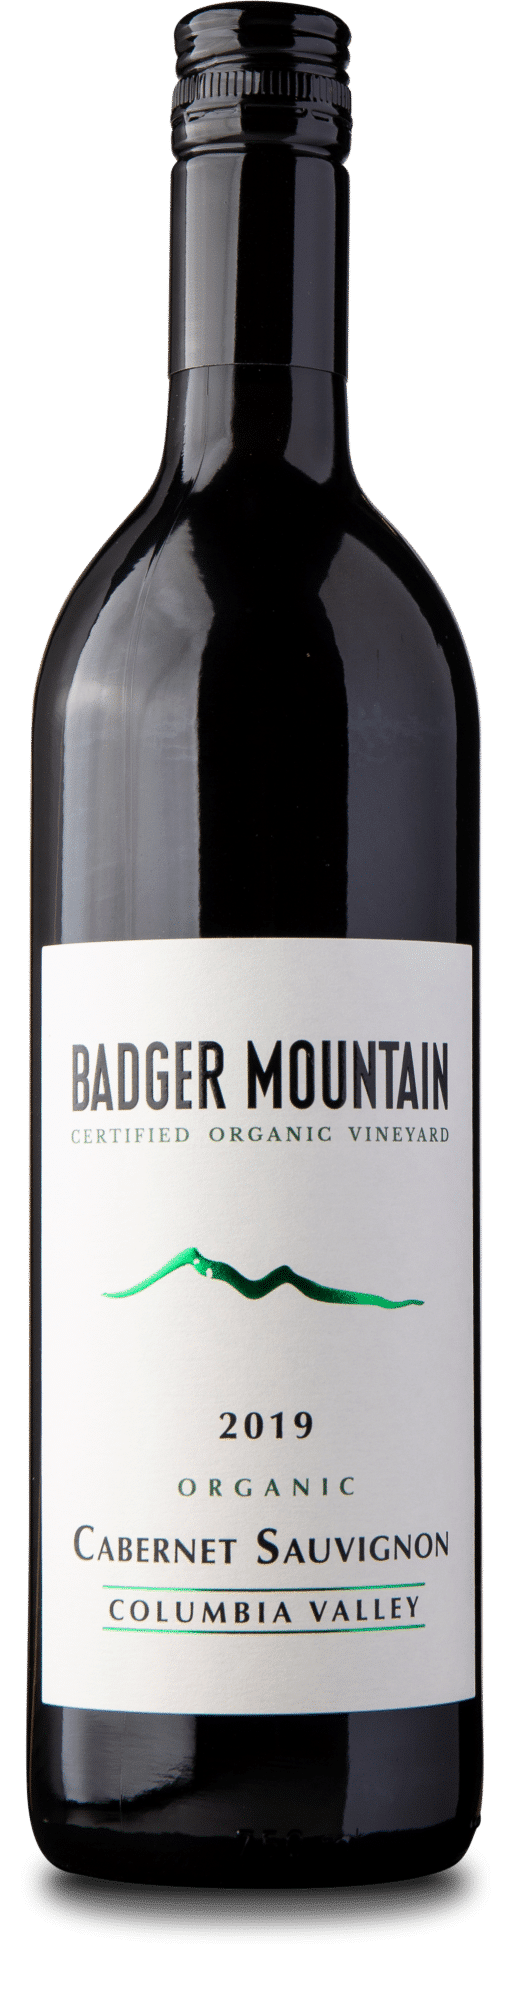 Badger Mountain Vineyard - Cabernet Sauvignon ØKO